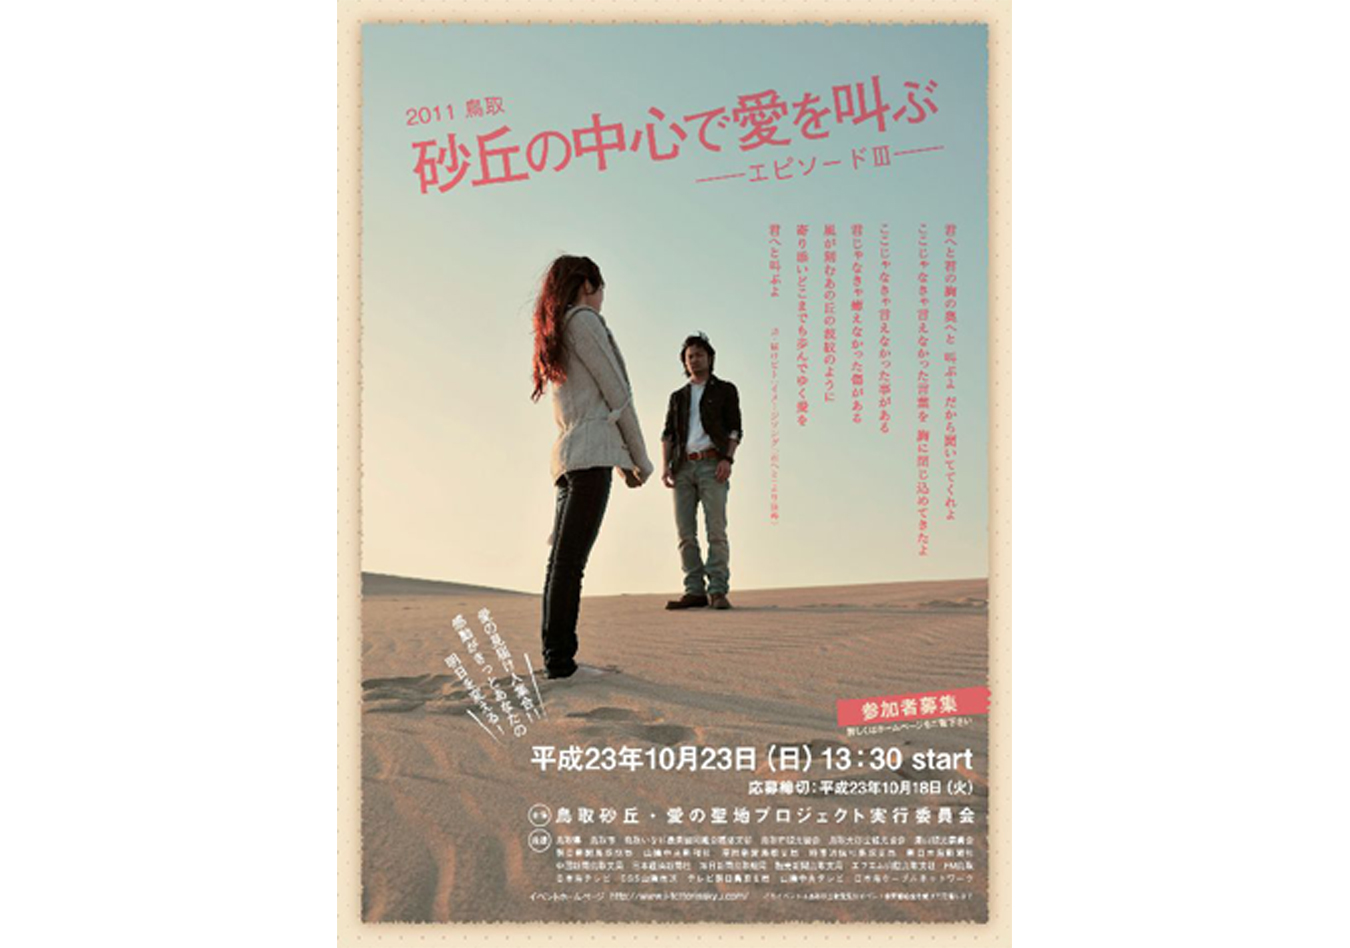 2010 烏取砂丘の中心で愛を叫ぶ -エピソード-